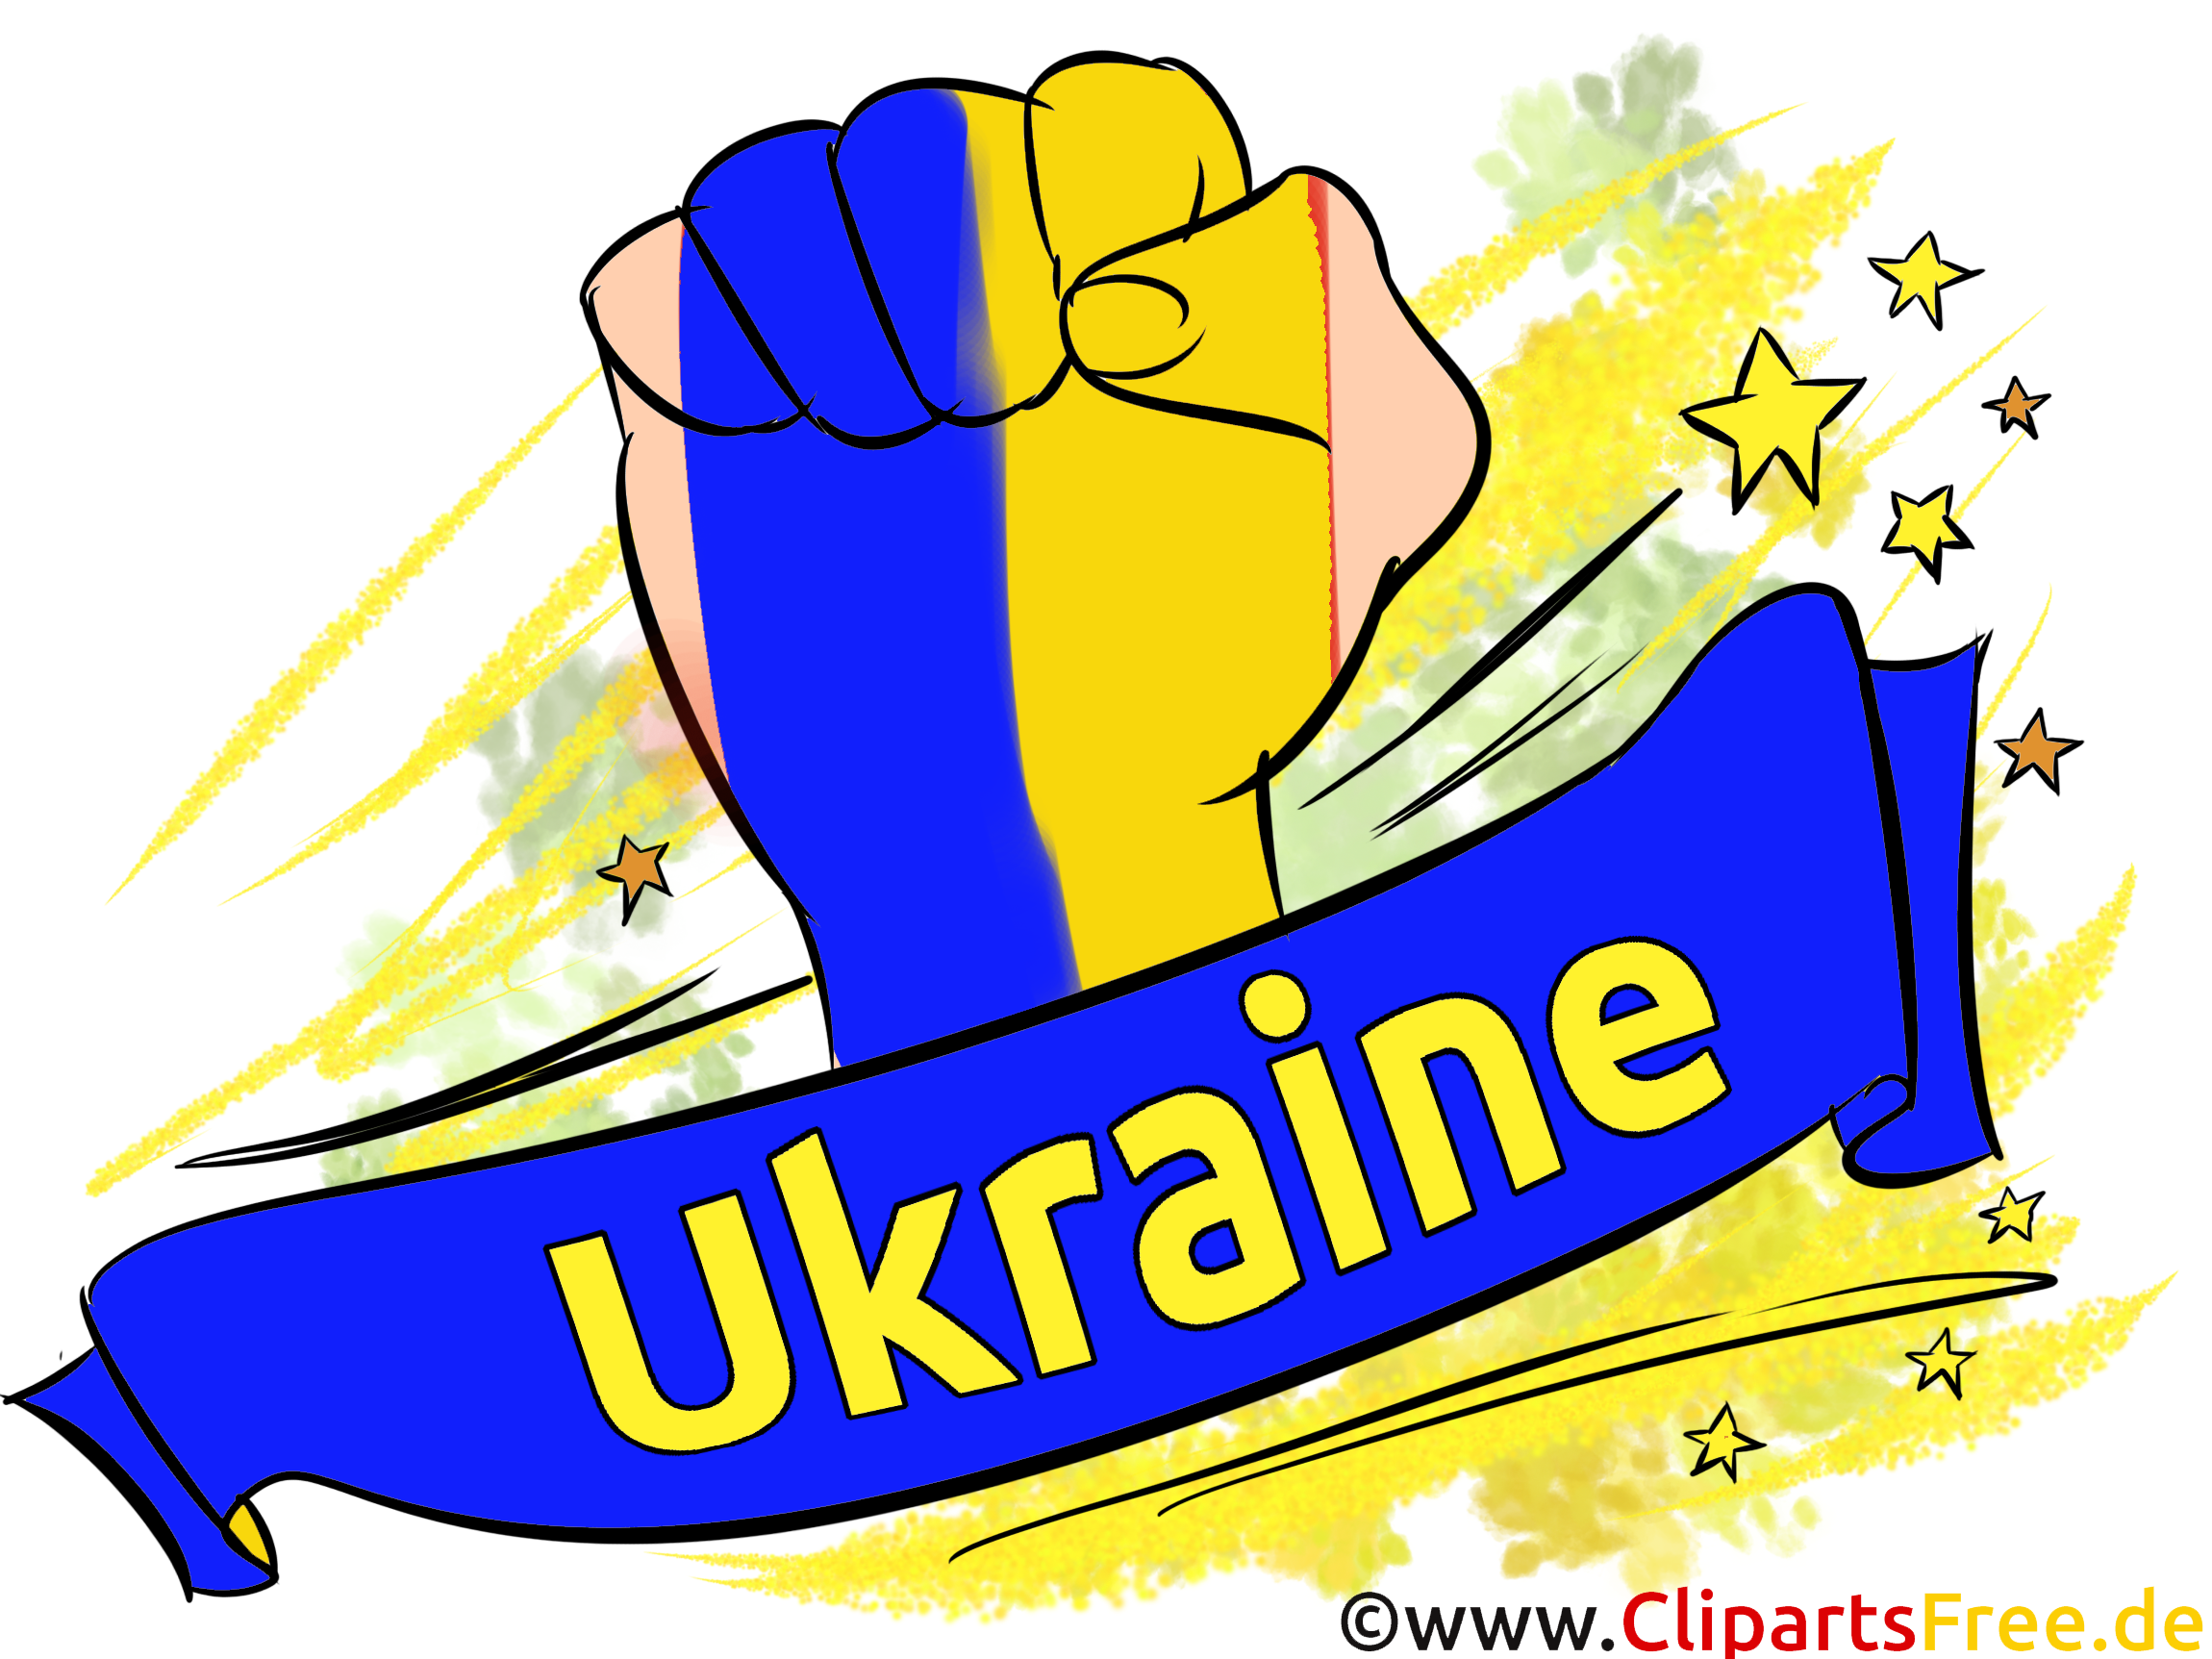 Joueur Ukraine Football Soccer gratuit Image